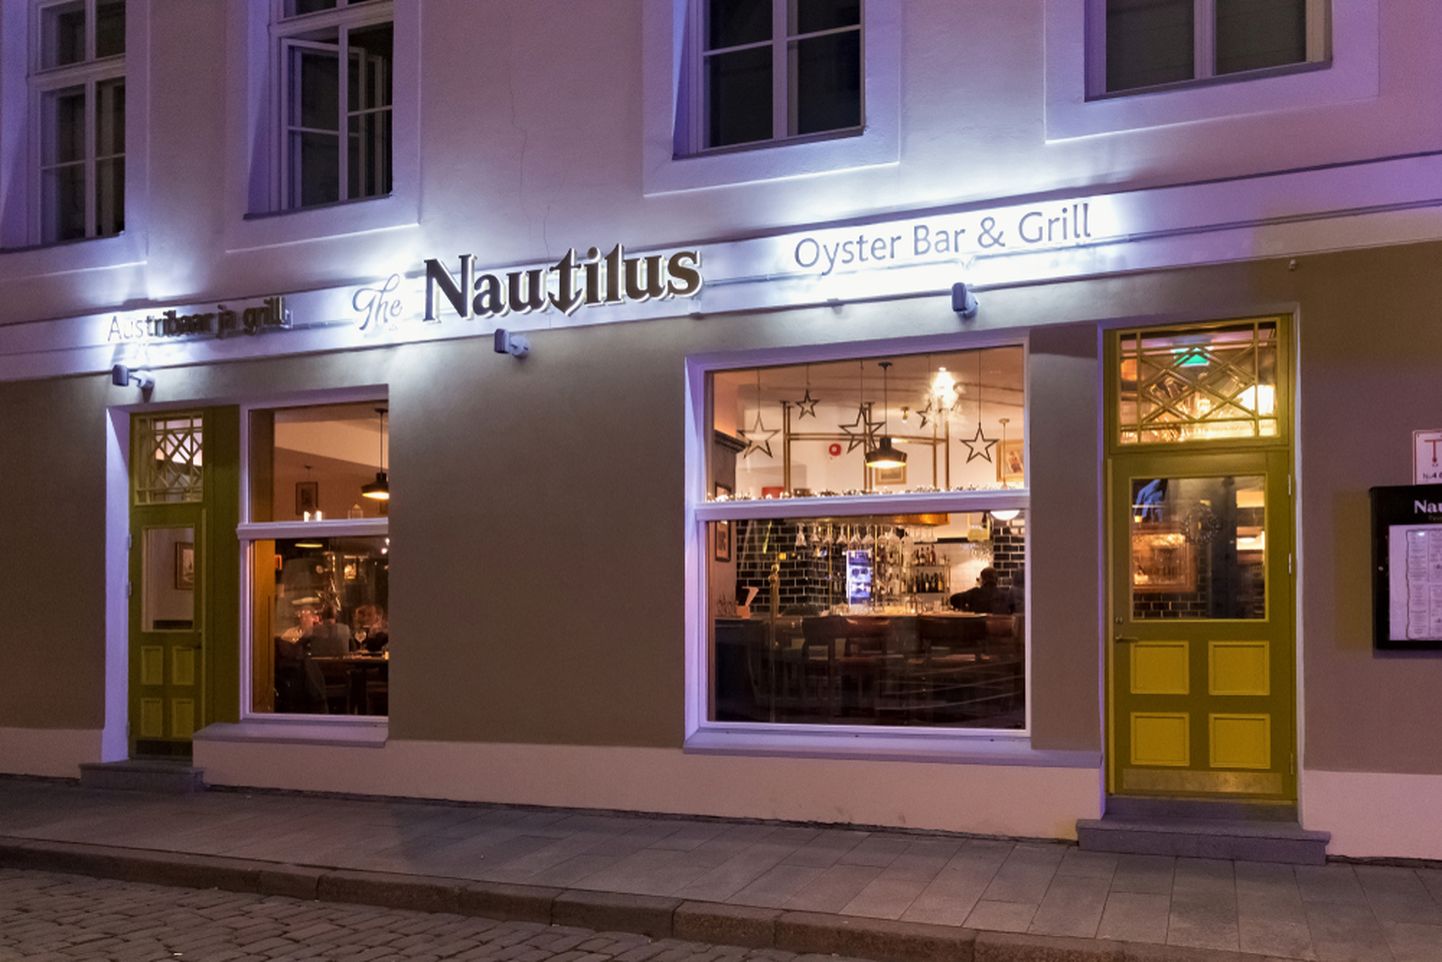 Ресторан The Nautilus.